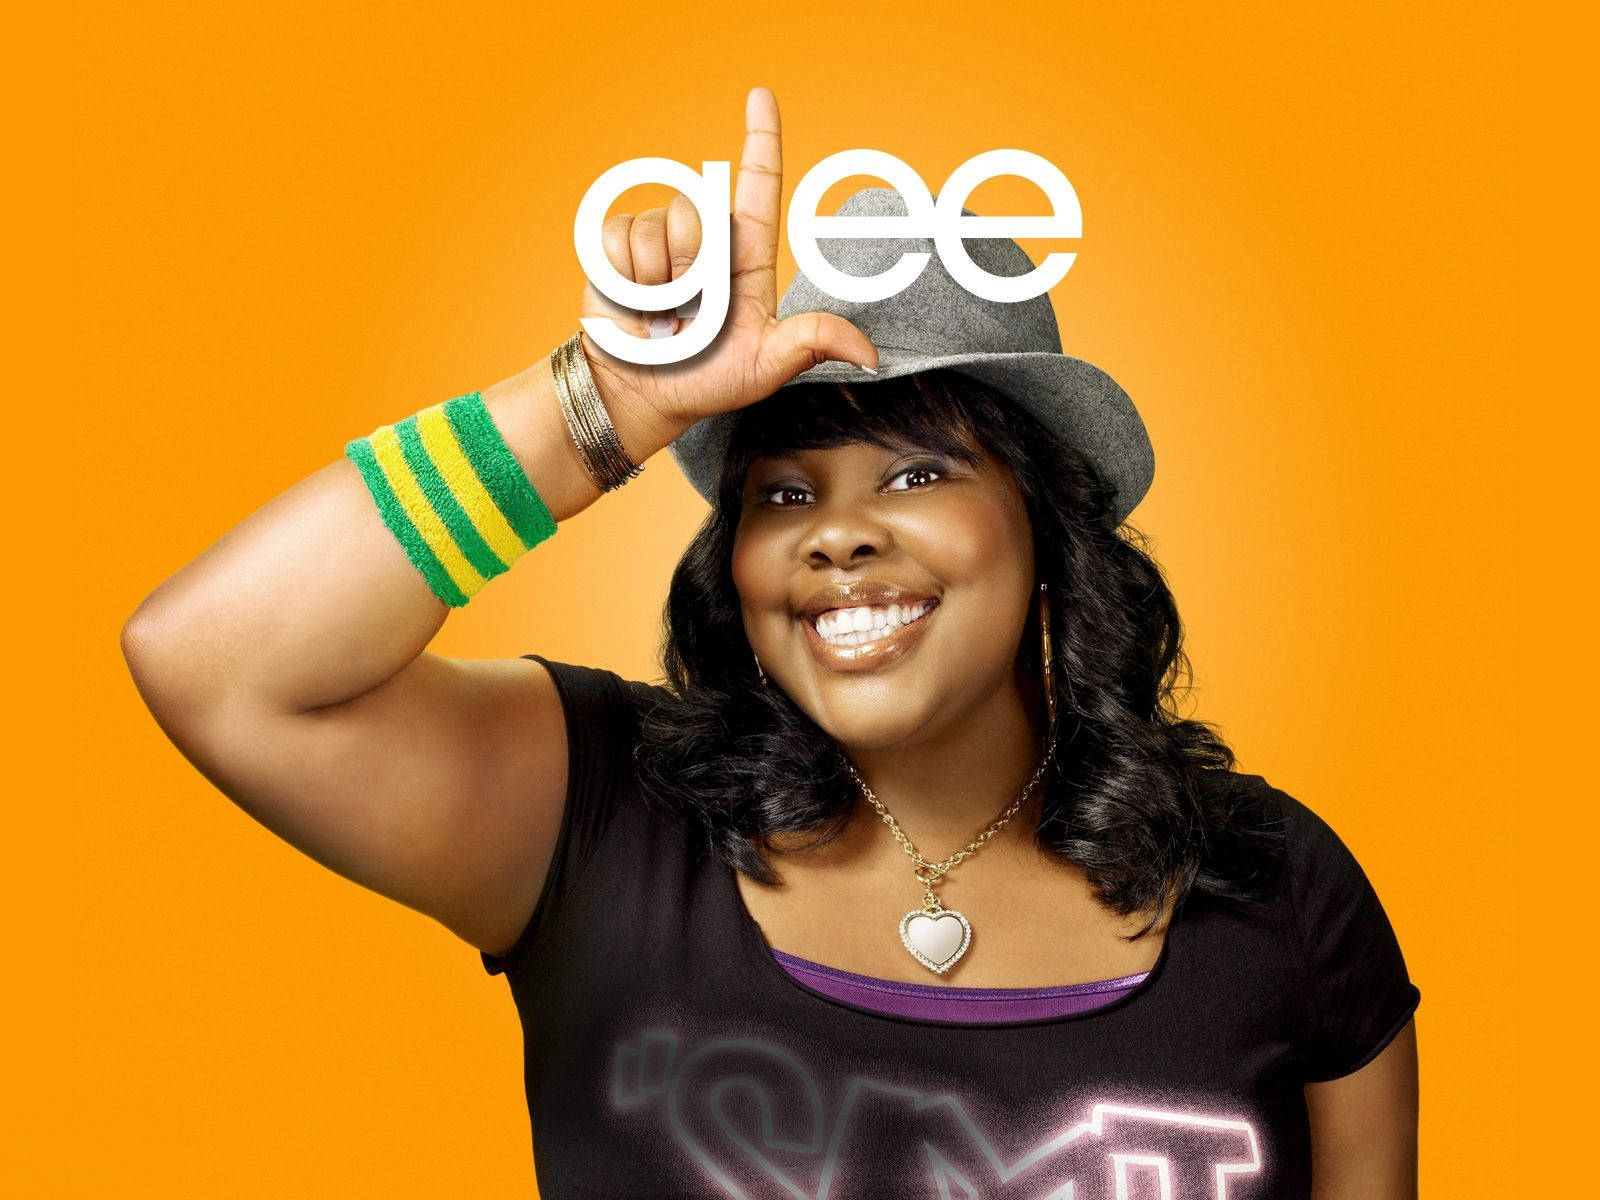 Usamerikanische Fernsehserie Glee Besetzung Mercedes Jones Wallpaper